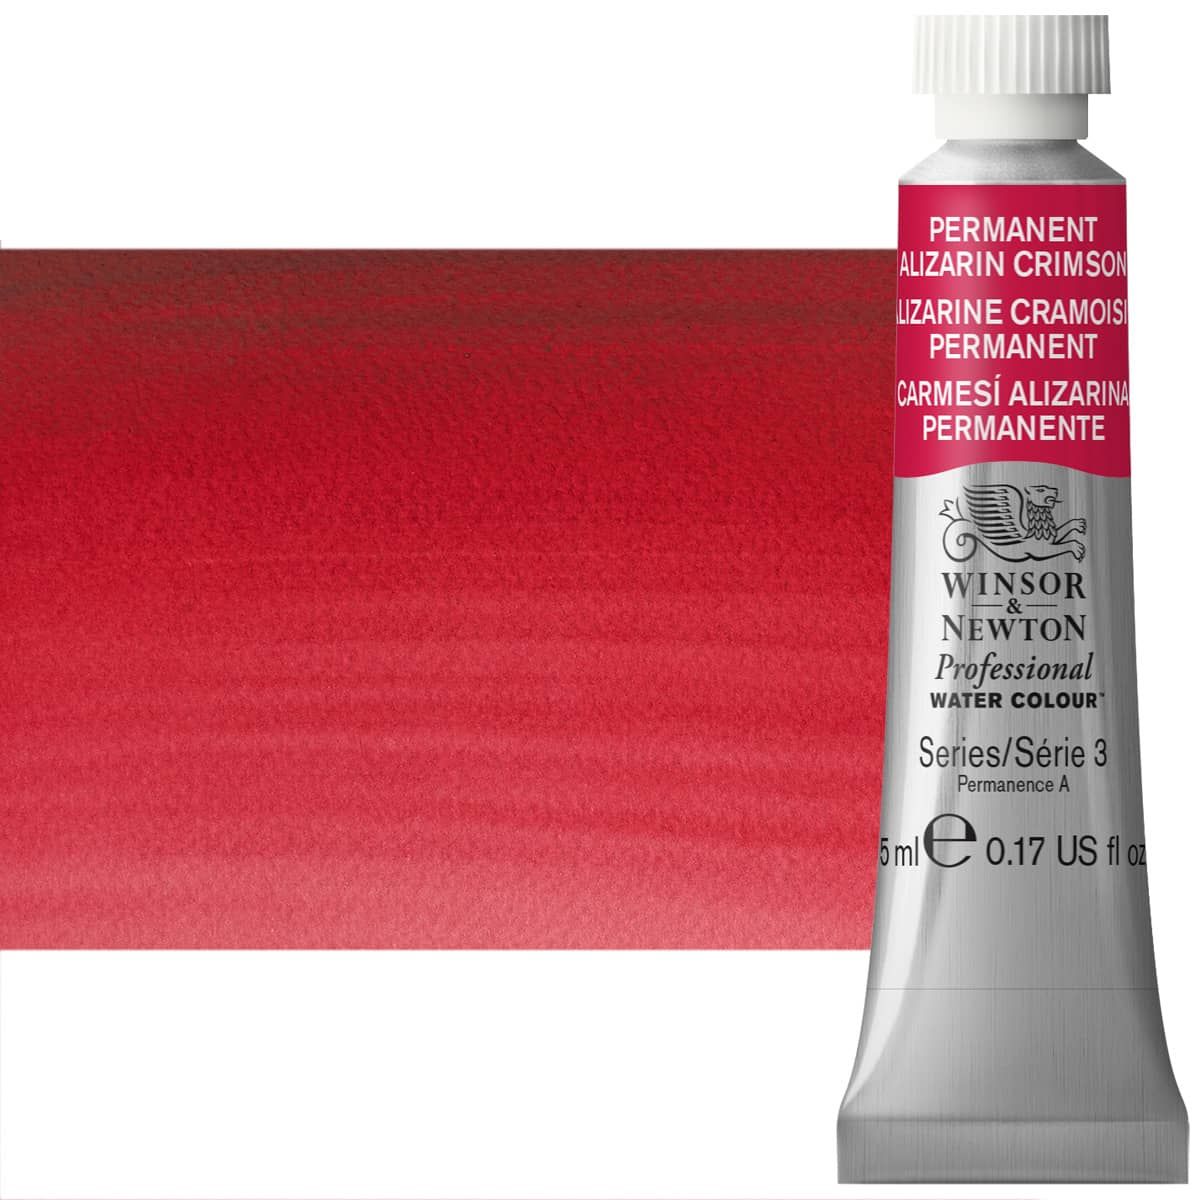 Winsor & Newton Professional Watercolor - Permanent Alizarin Crimson, 5ml Tube